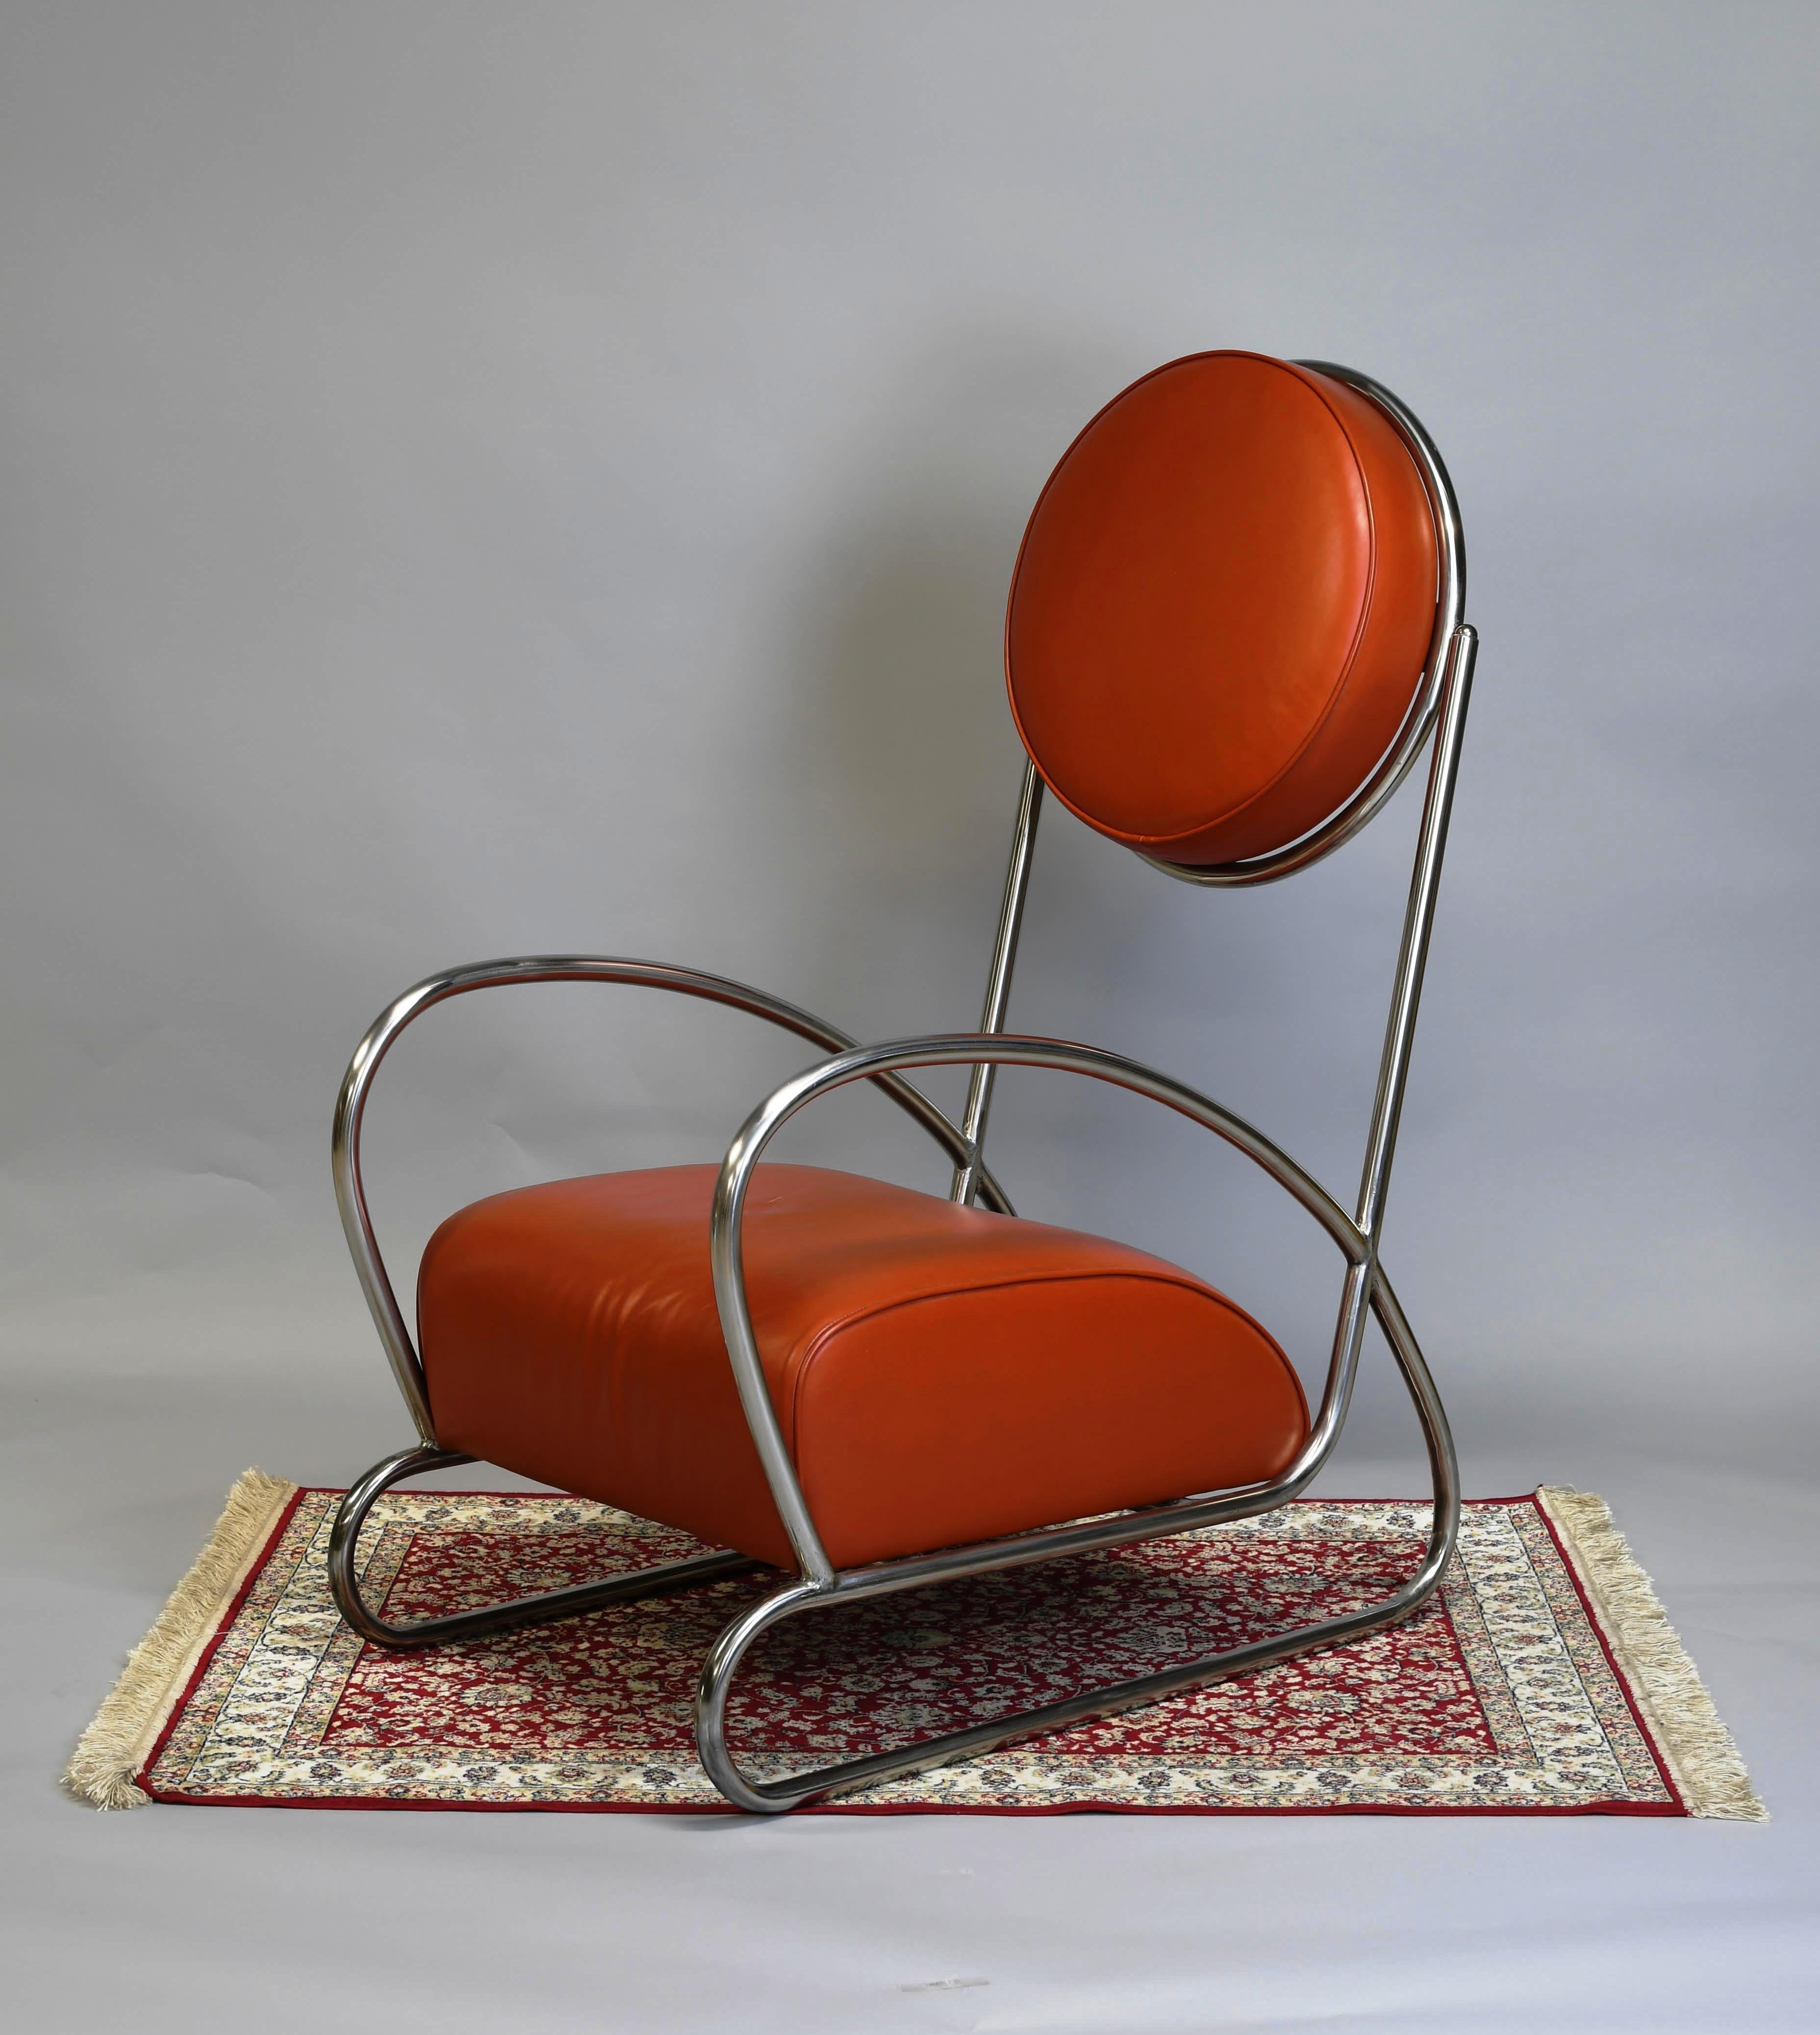 fauteuil en métal tubulaire chromé des années 90. dans le style art déco par Hayek Gottwald. produit dans les années 90. métal tubulaire chromé. rembourrage en skaï.